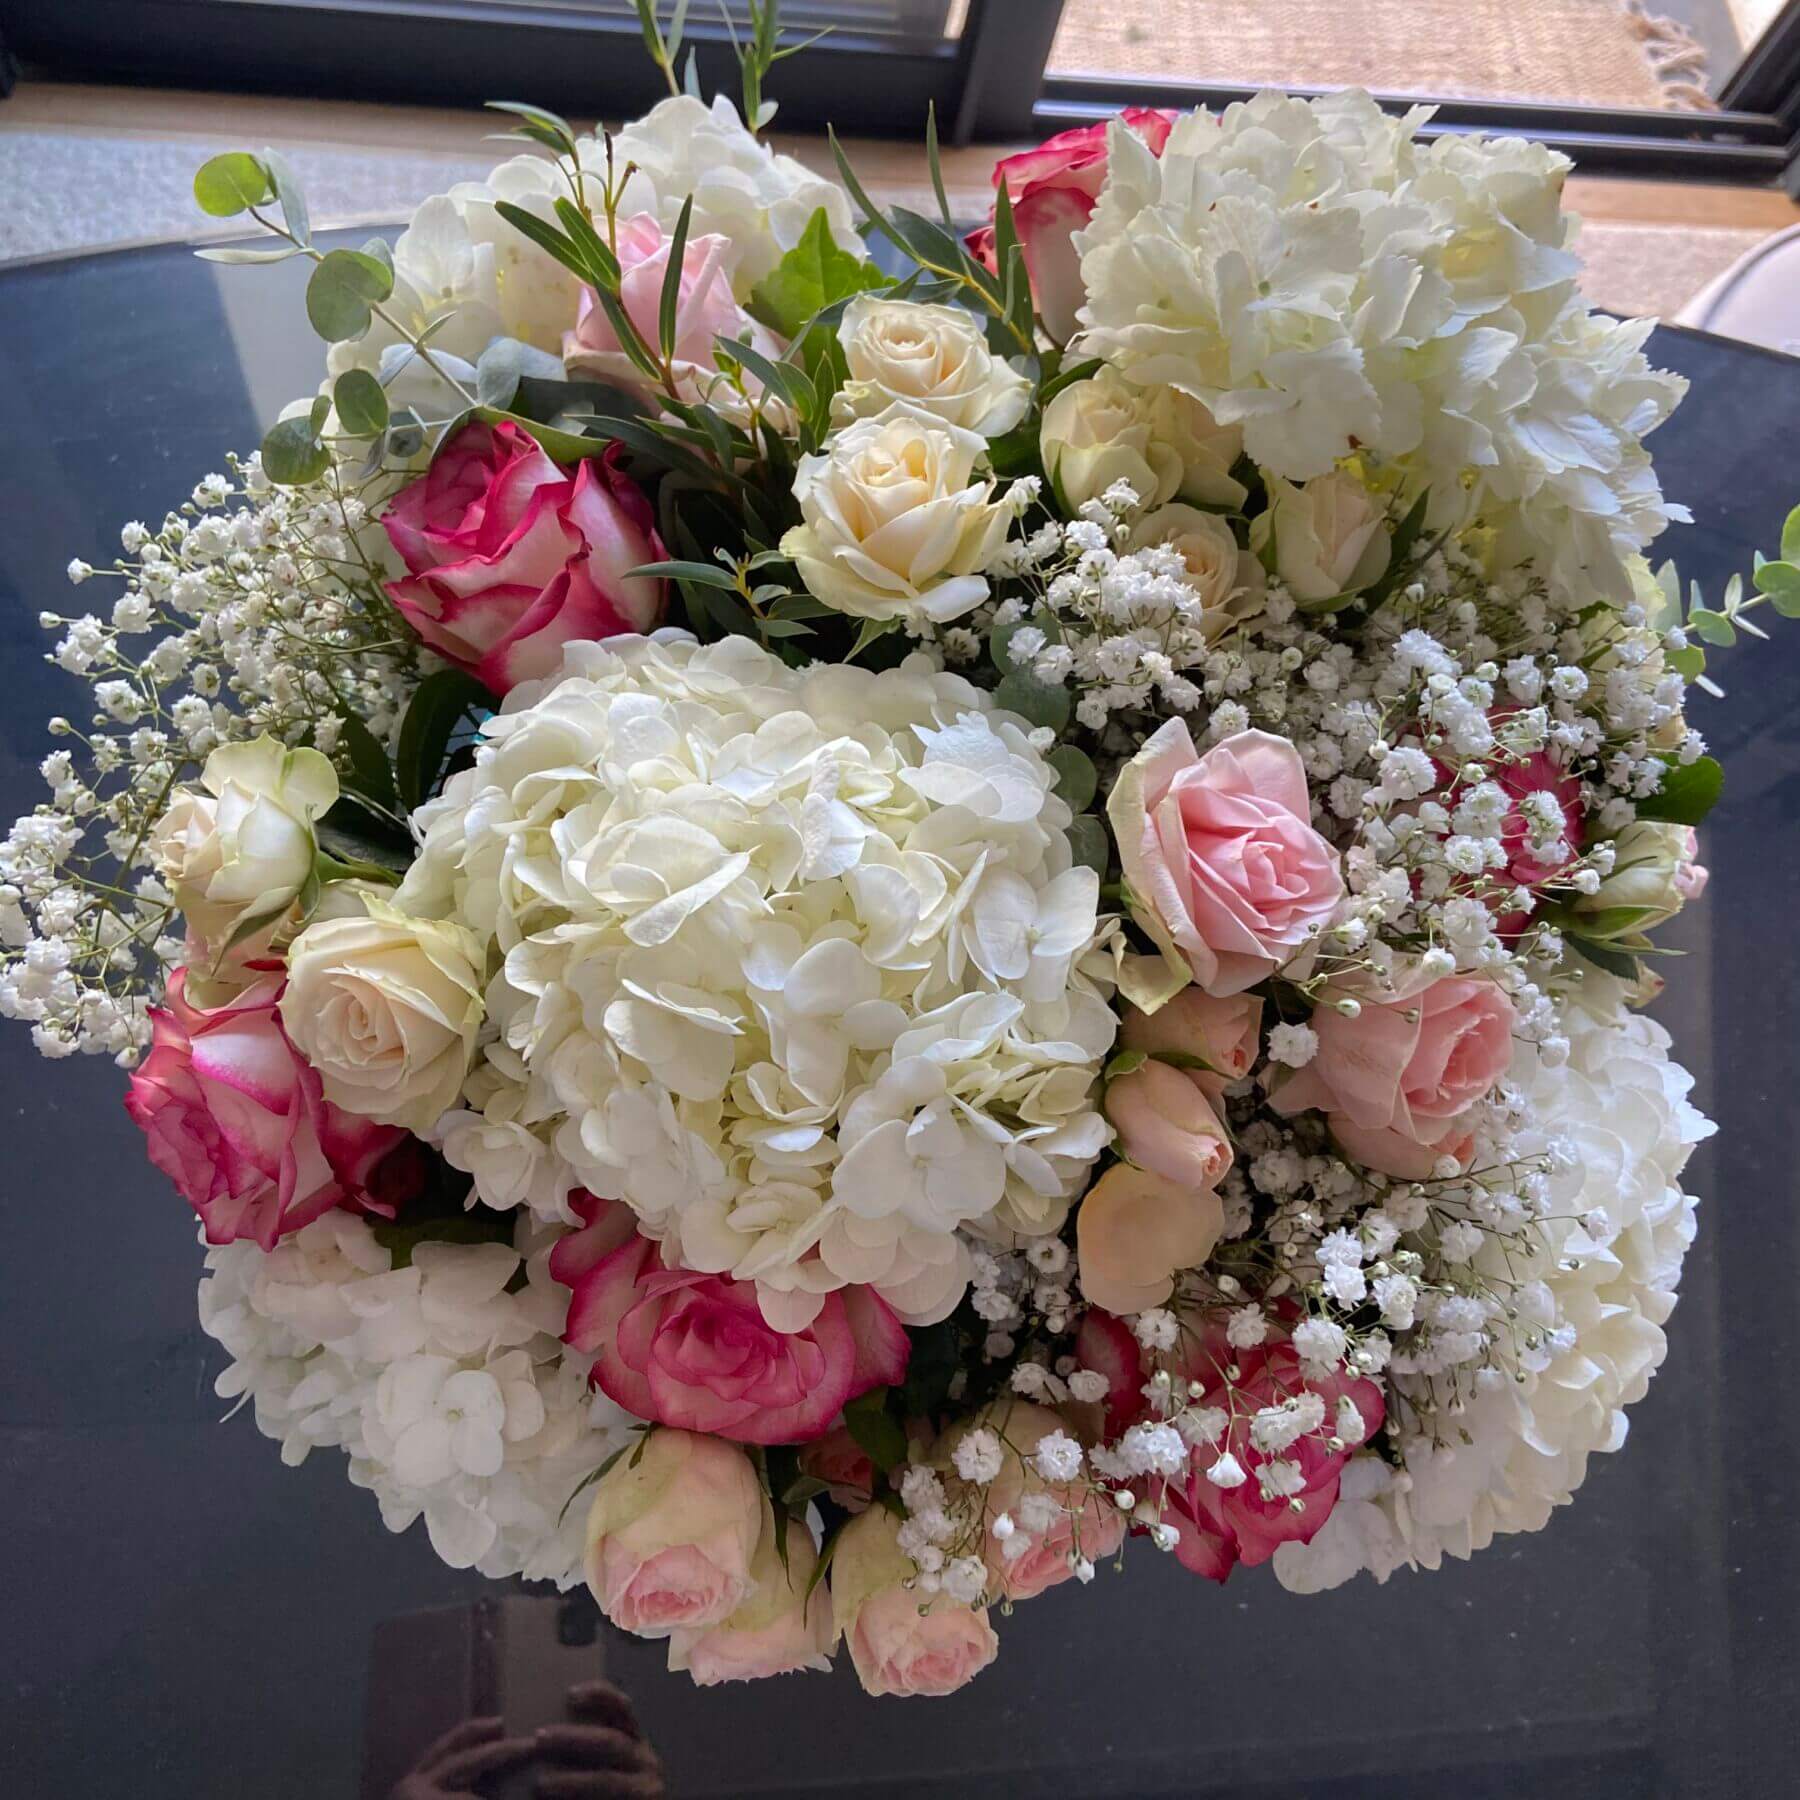 Bouquet de fleurs coupées fraîches - Les Fleurs du Temps